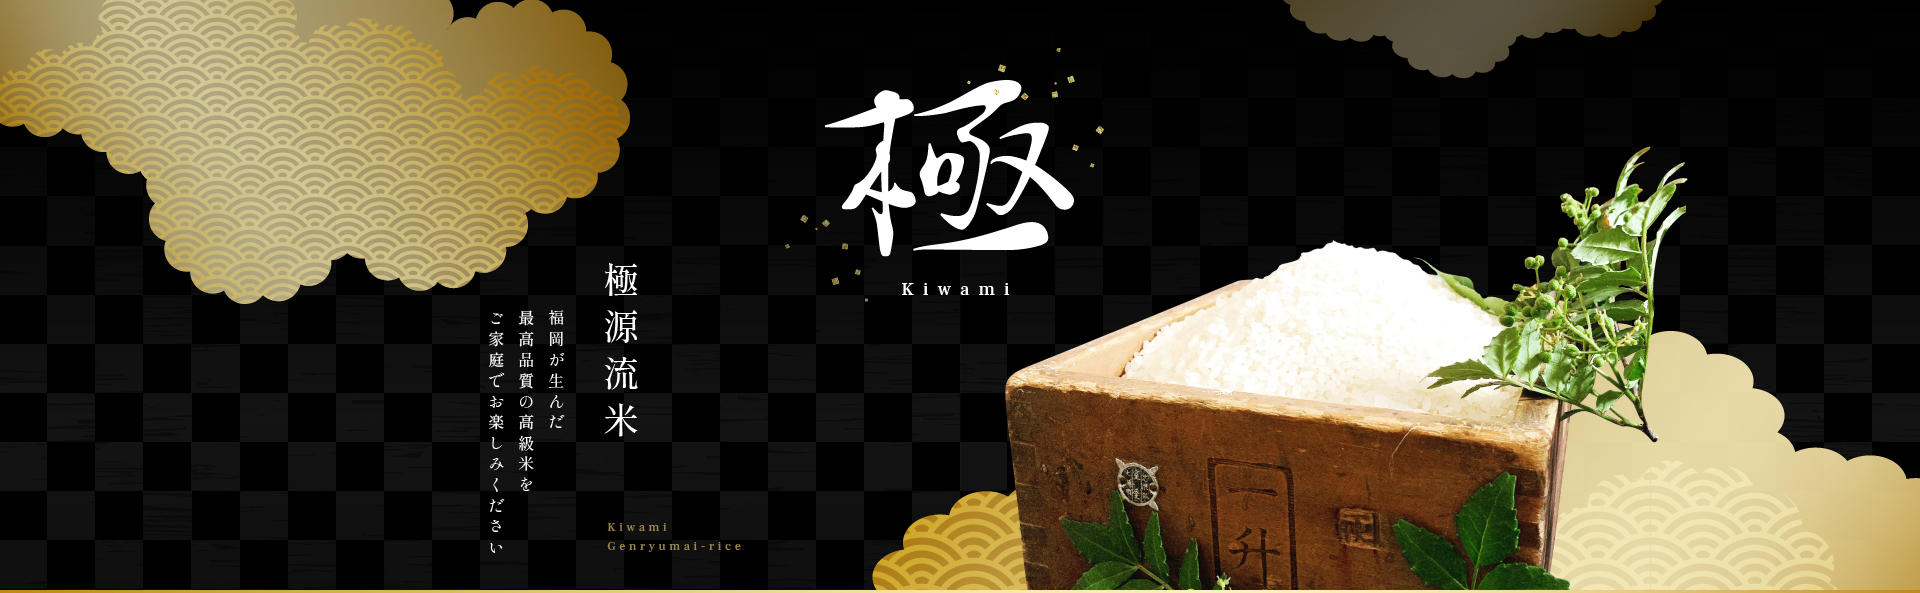 極源流米 福岡が生んだ最高品質の高級米をご家庭でお楽しみください